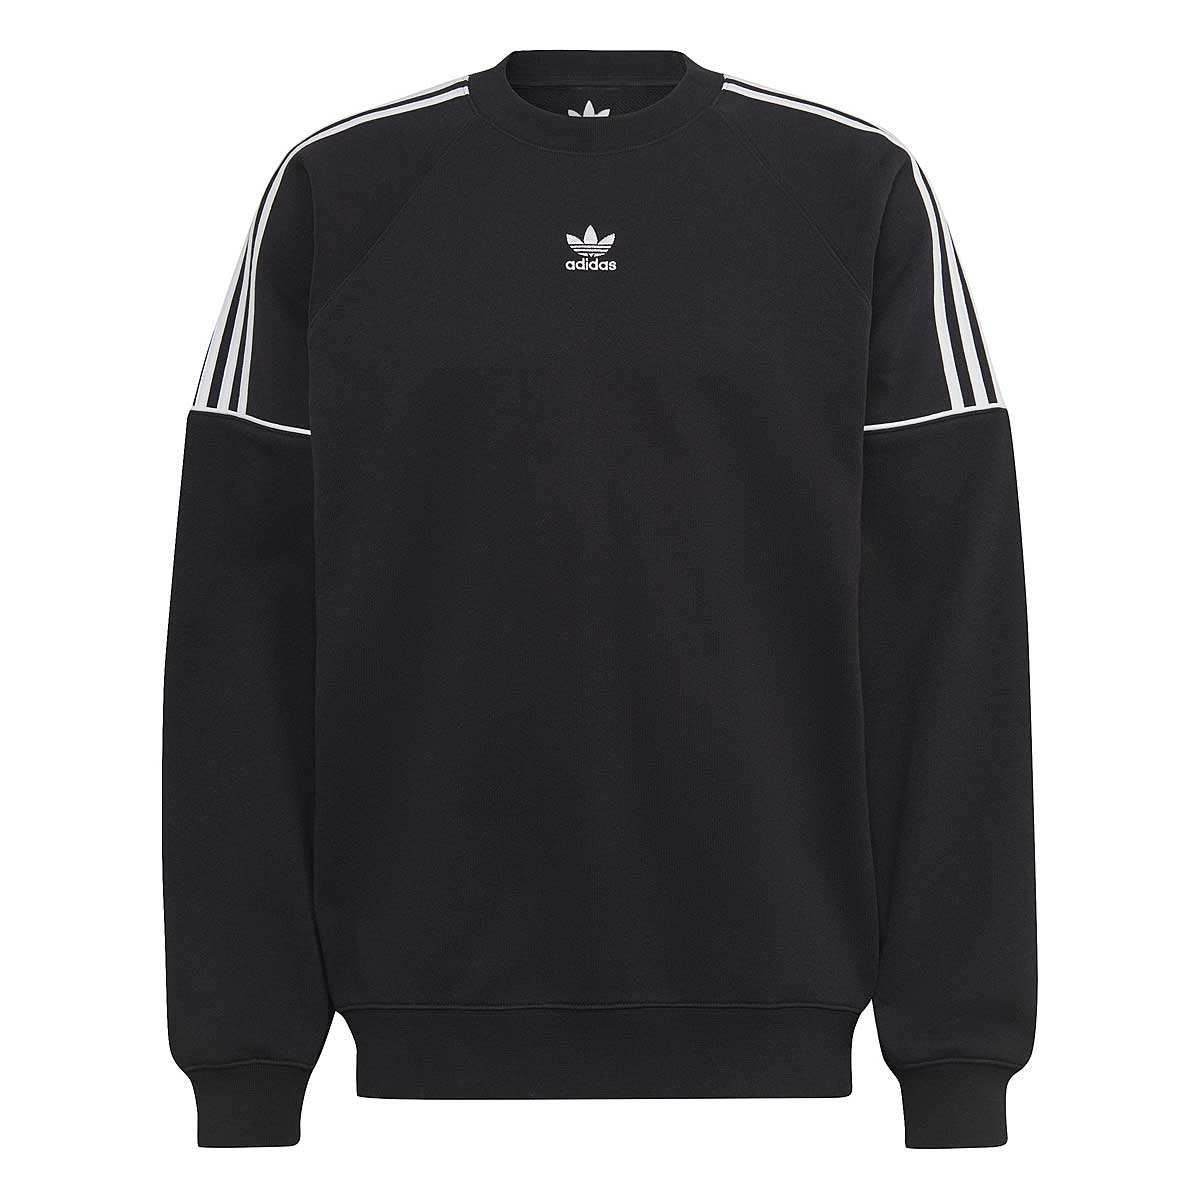 Adidas Originals Essential Creweck, Black/Black